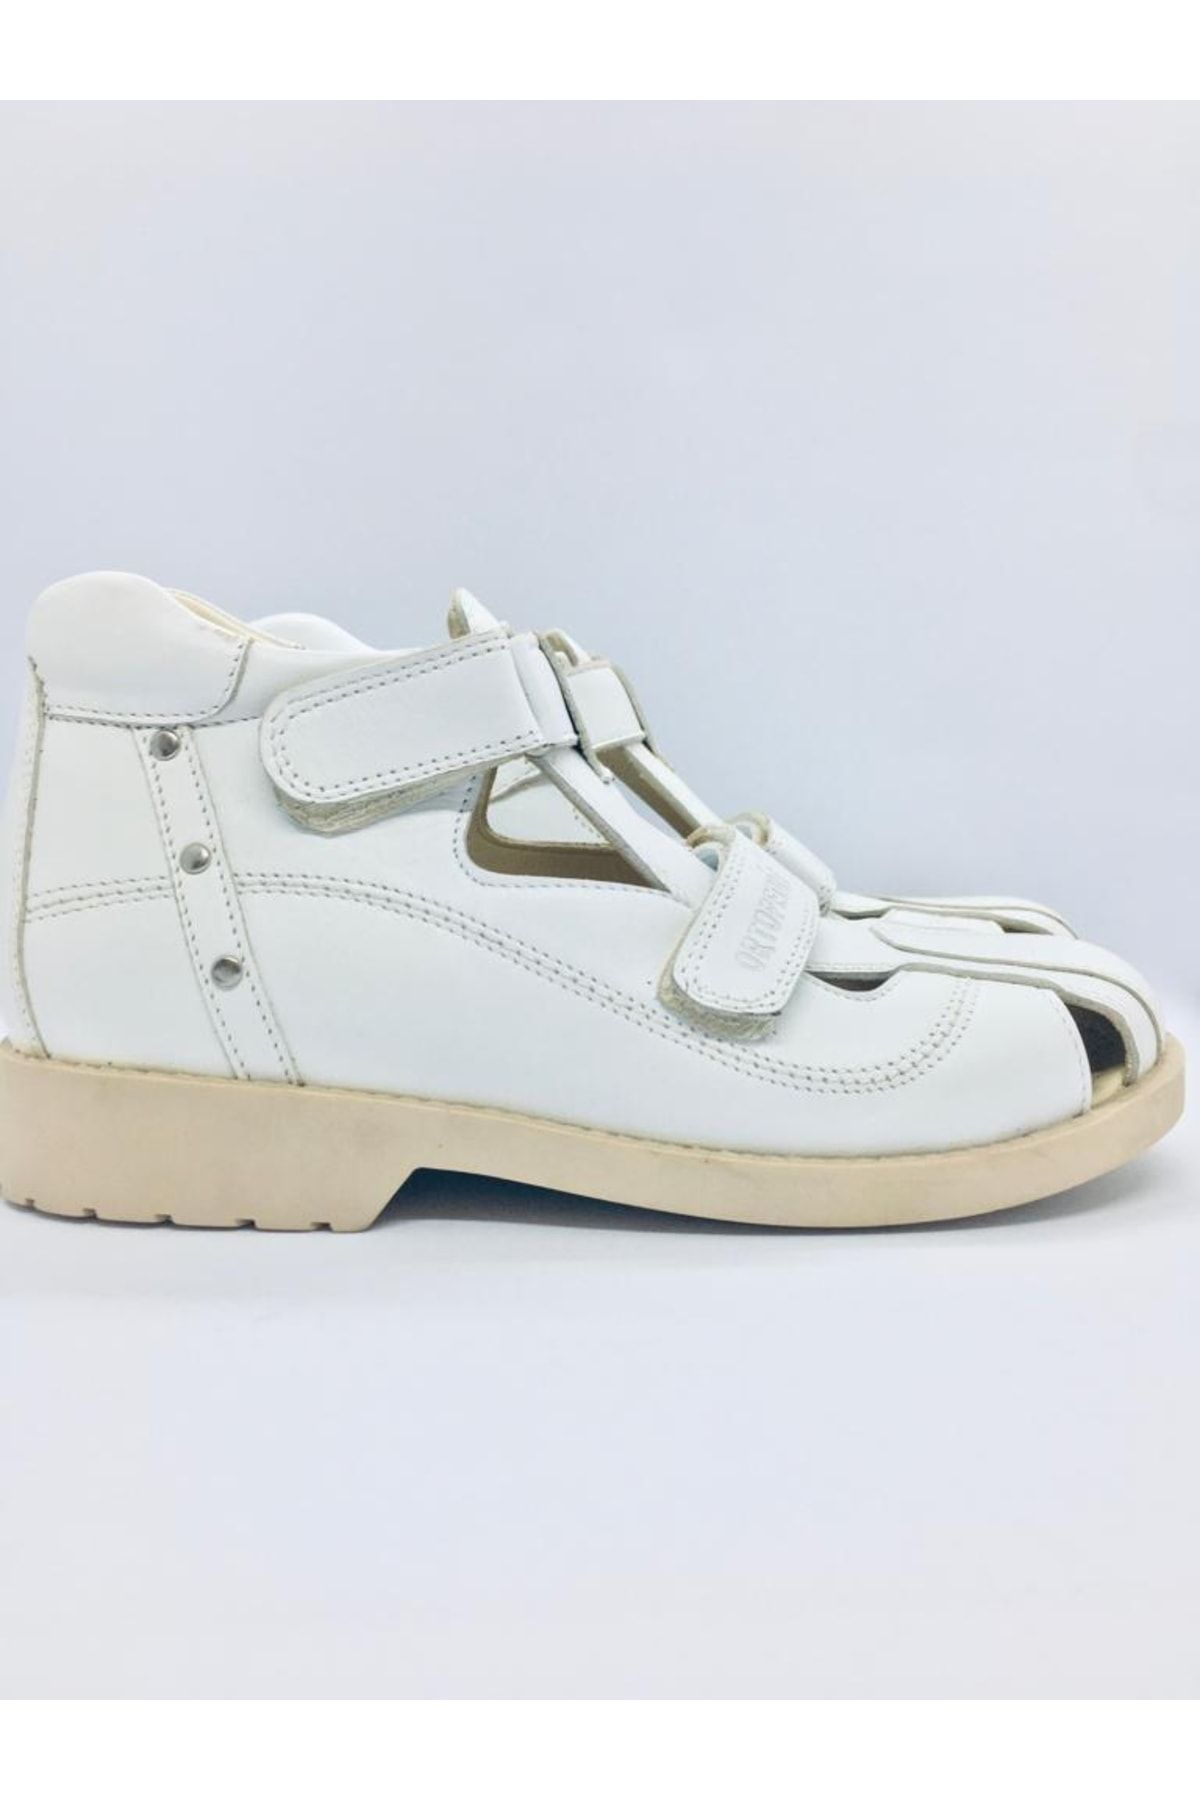 ortopedia Ortopedik Deri Çocuk Unisex Sandalet 636 - Beyaz